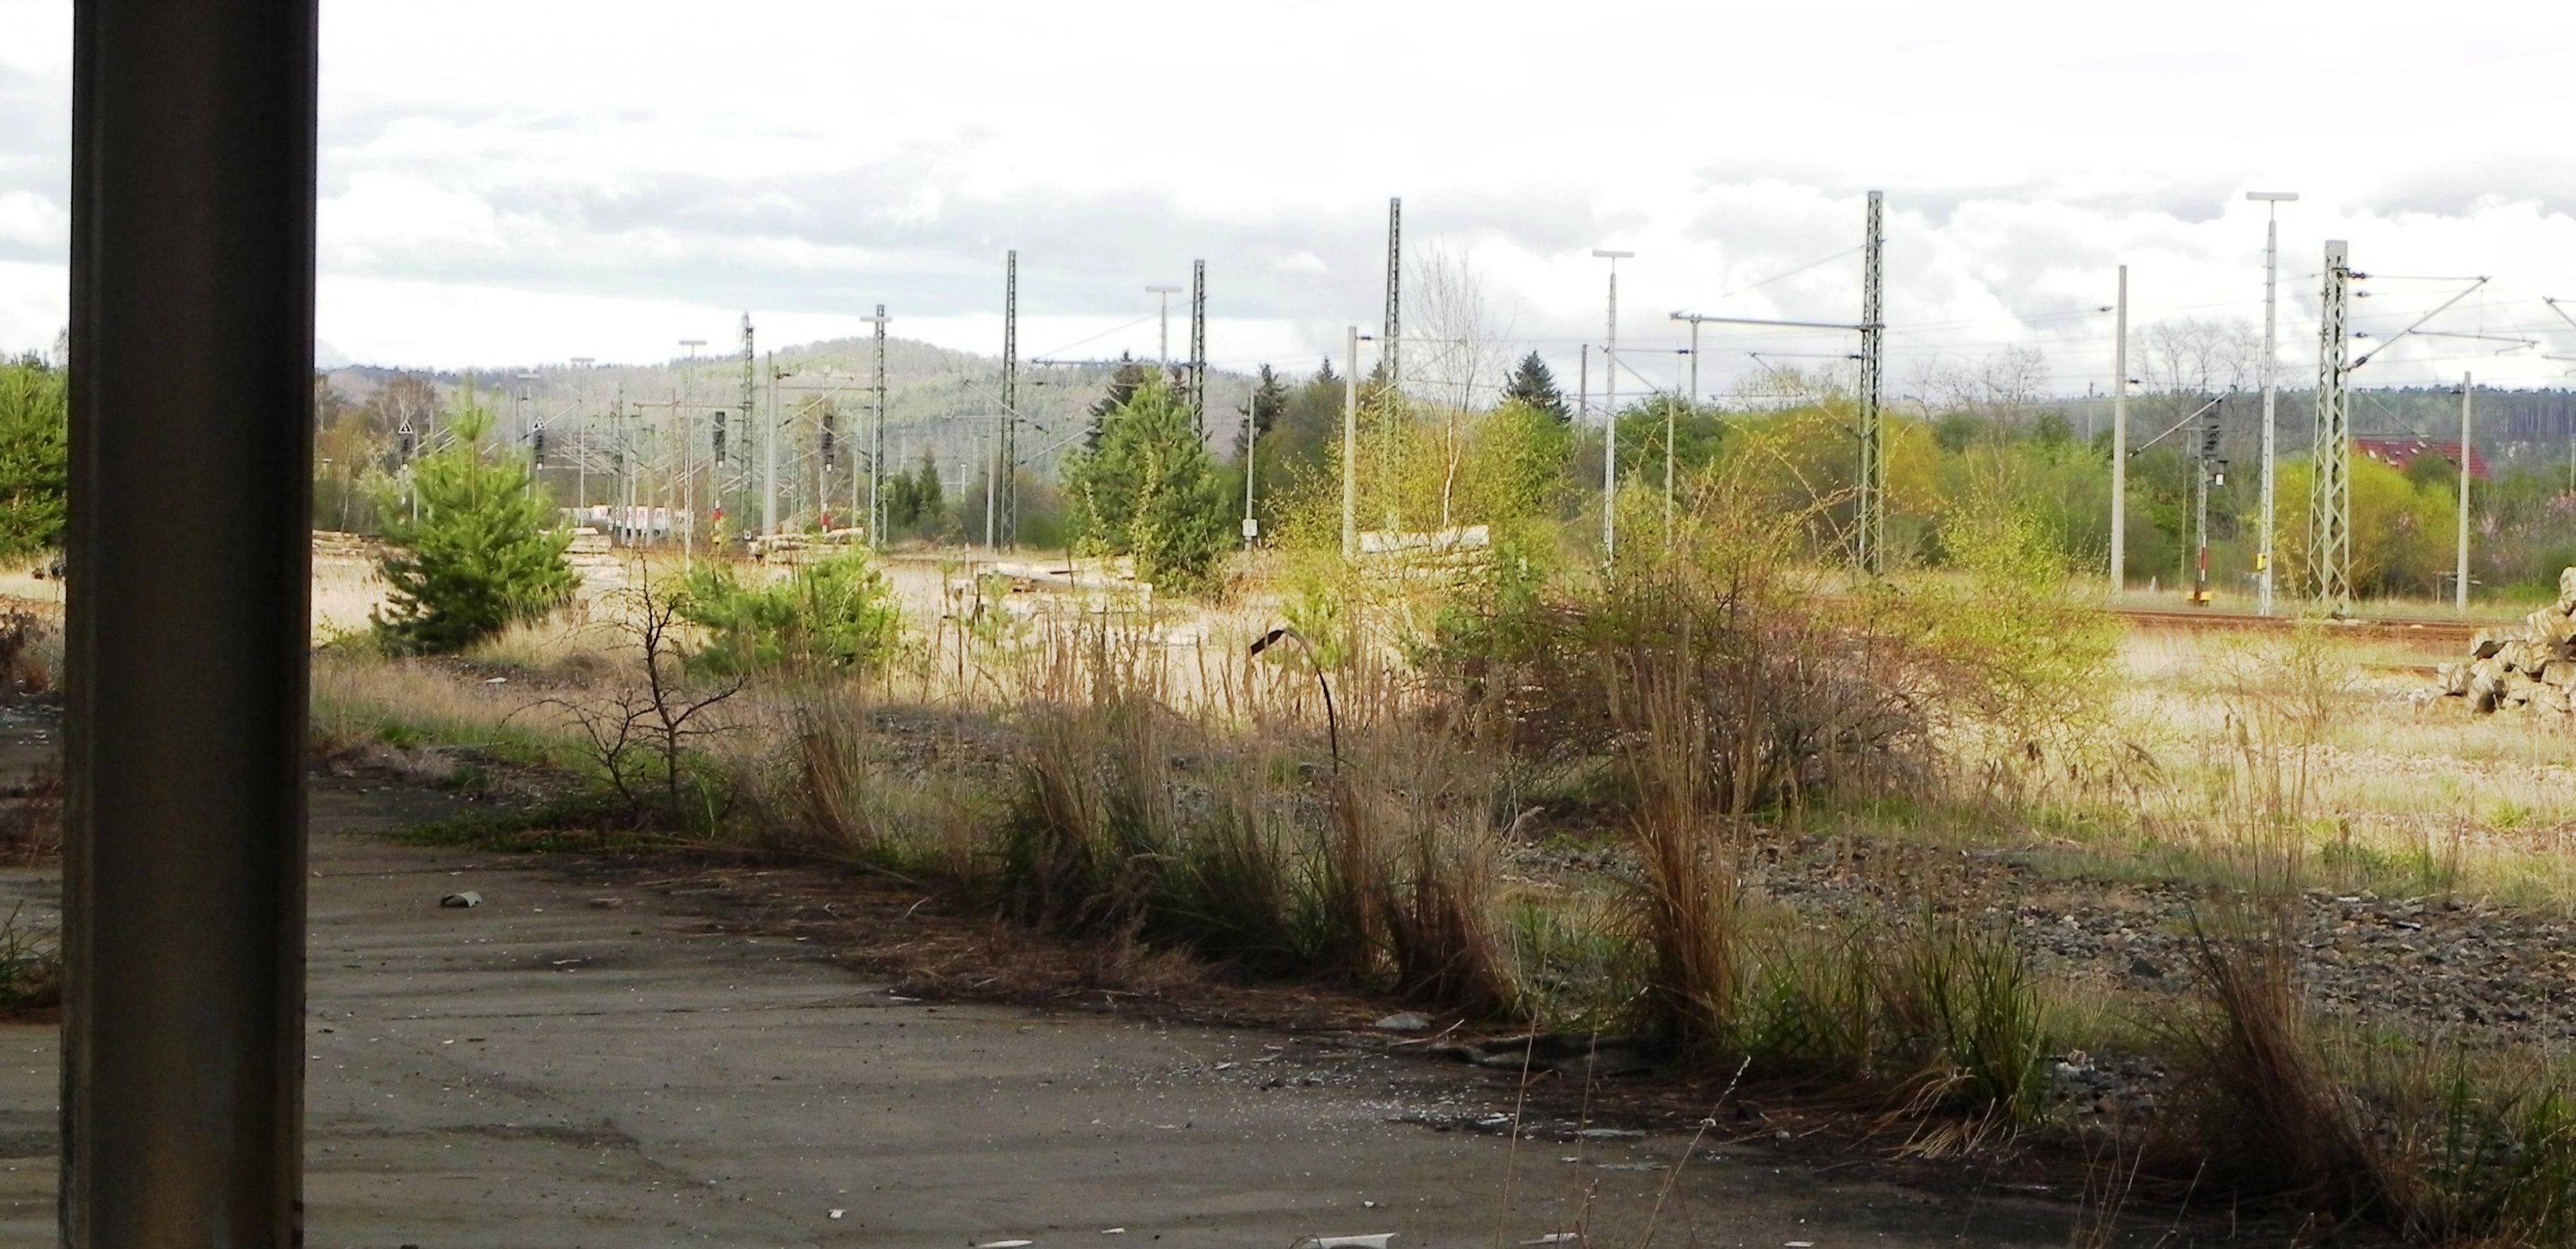 Zeitzeugen der Teilung, ehemaliger Grenzbahnhof Gerstungen im Jahr 2012